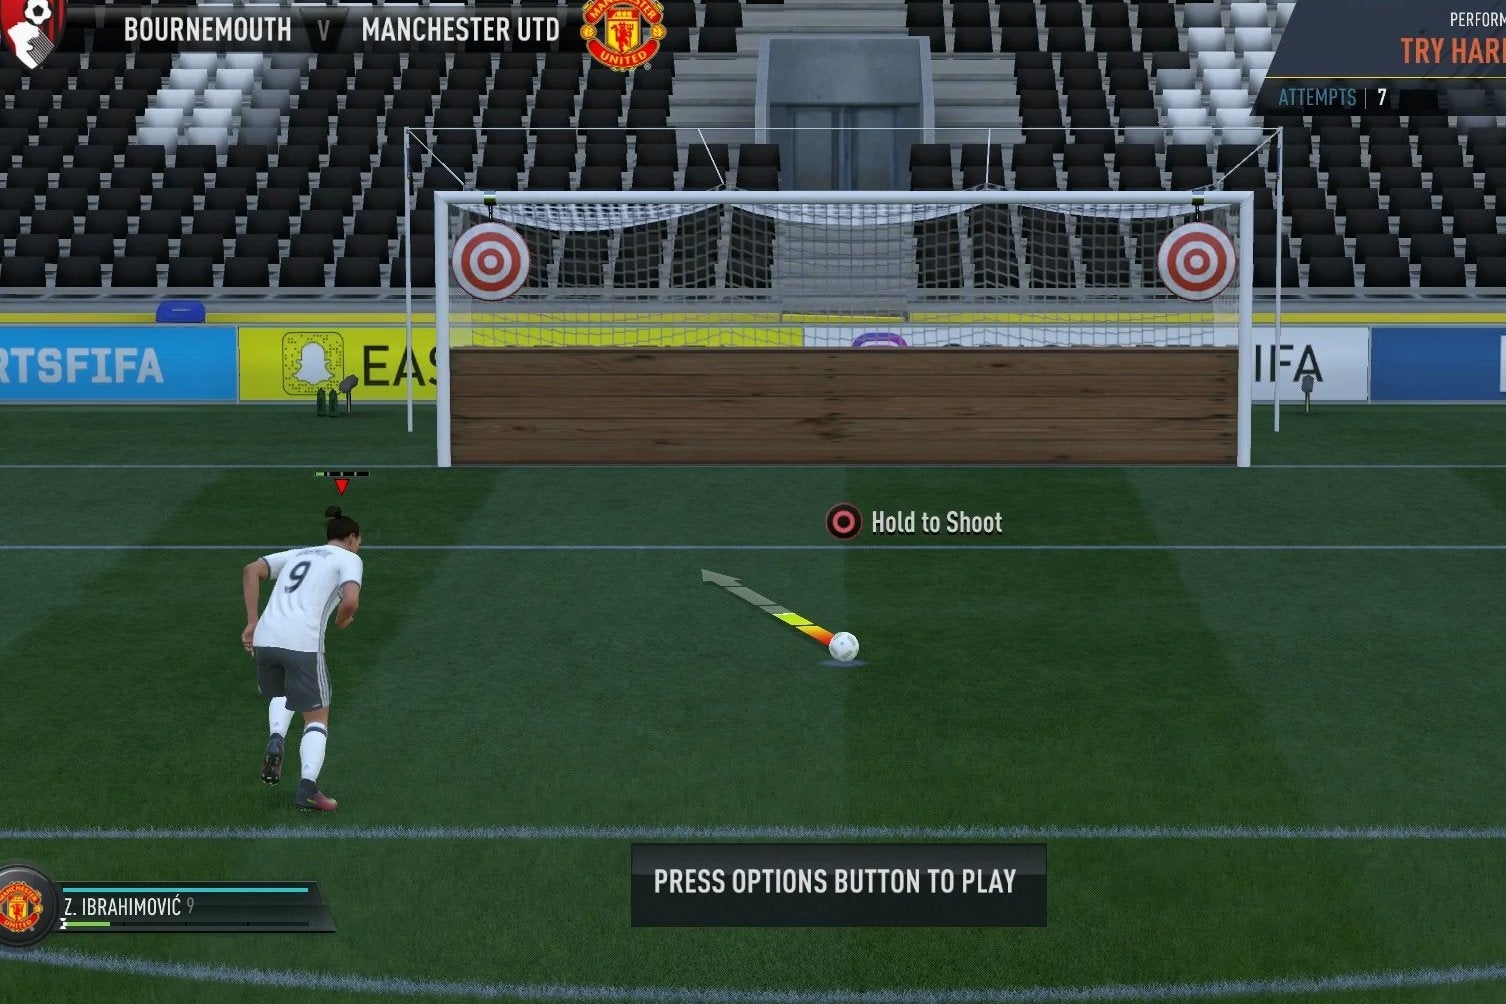 Imagen para FIFA 17 - Jugadas a balón parado: cómo marcar tiros libres, córners, penaltis y saques de banda